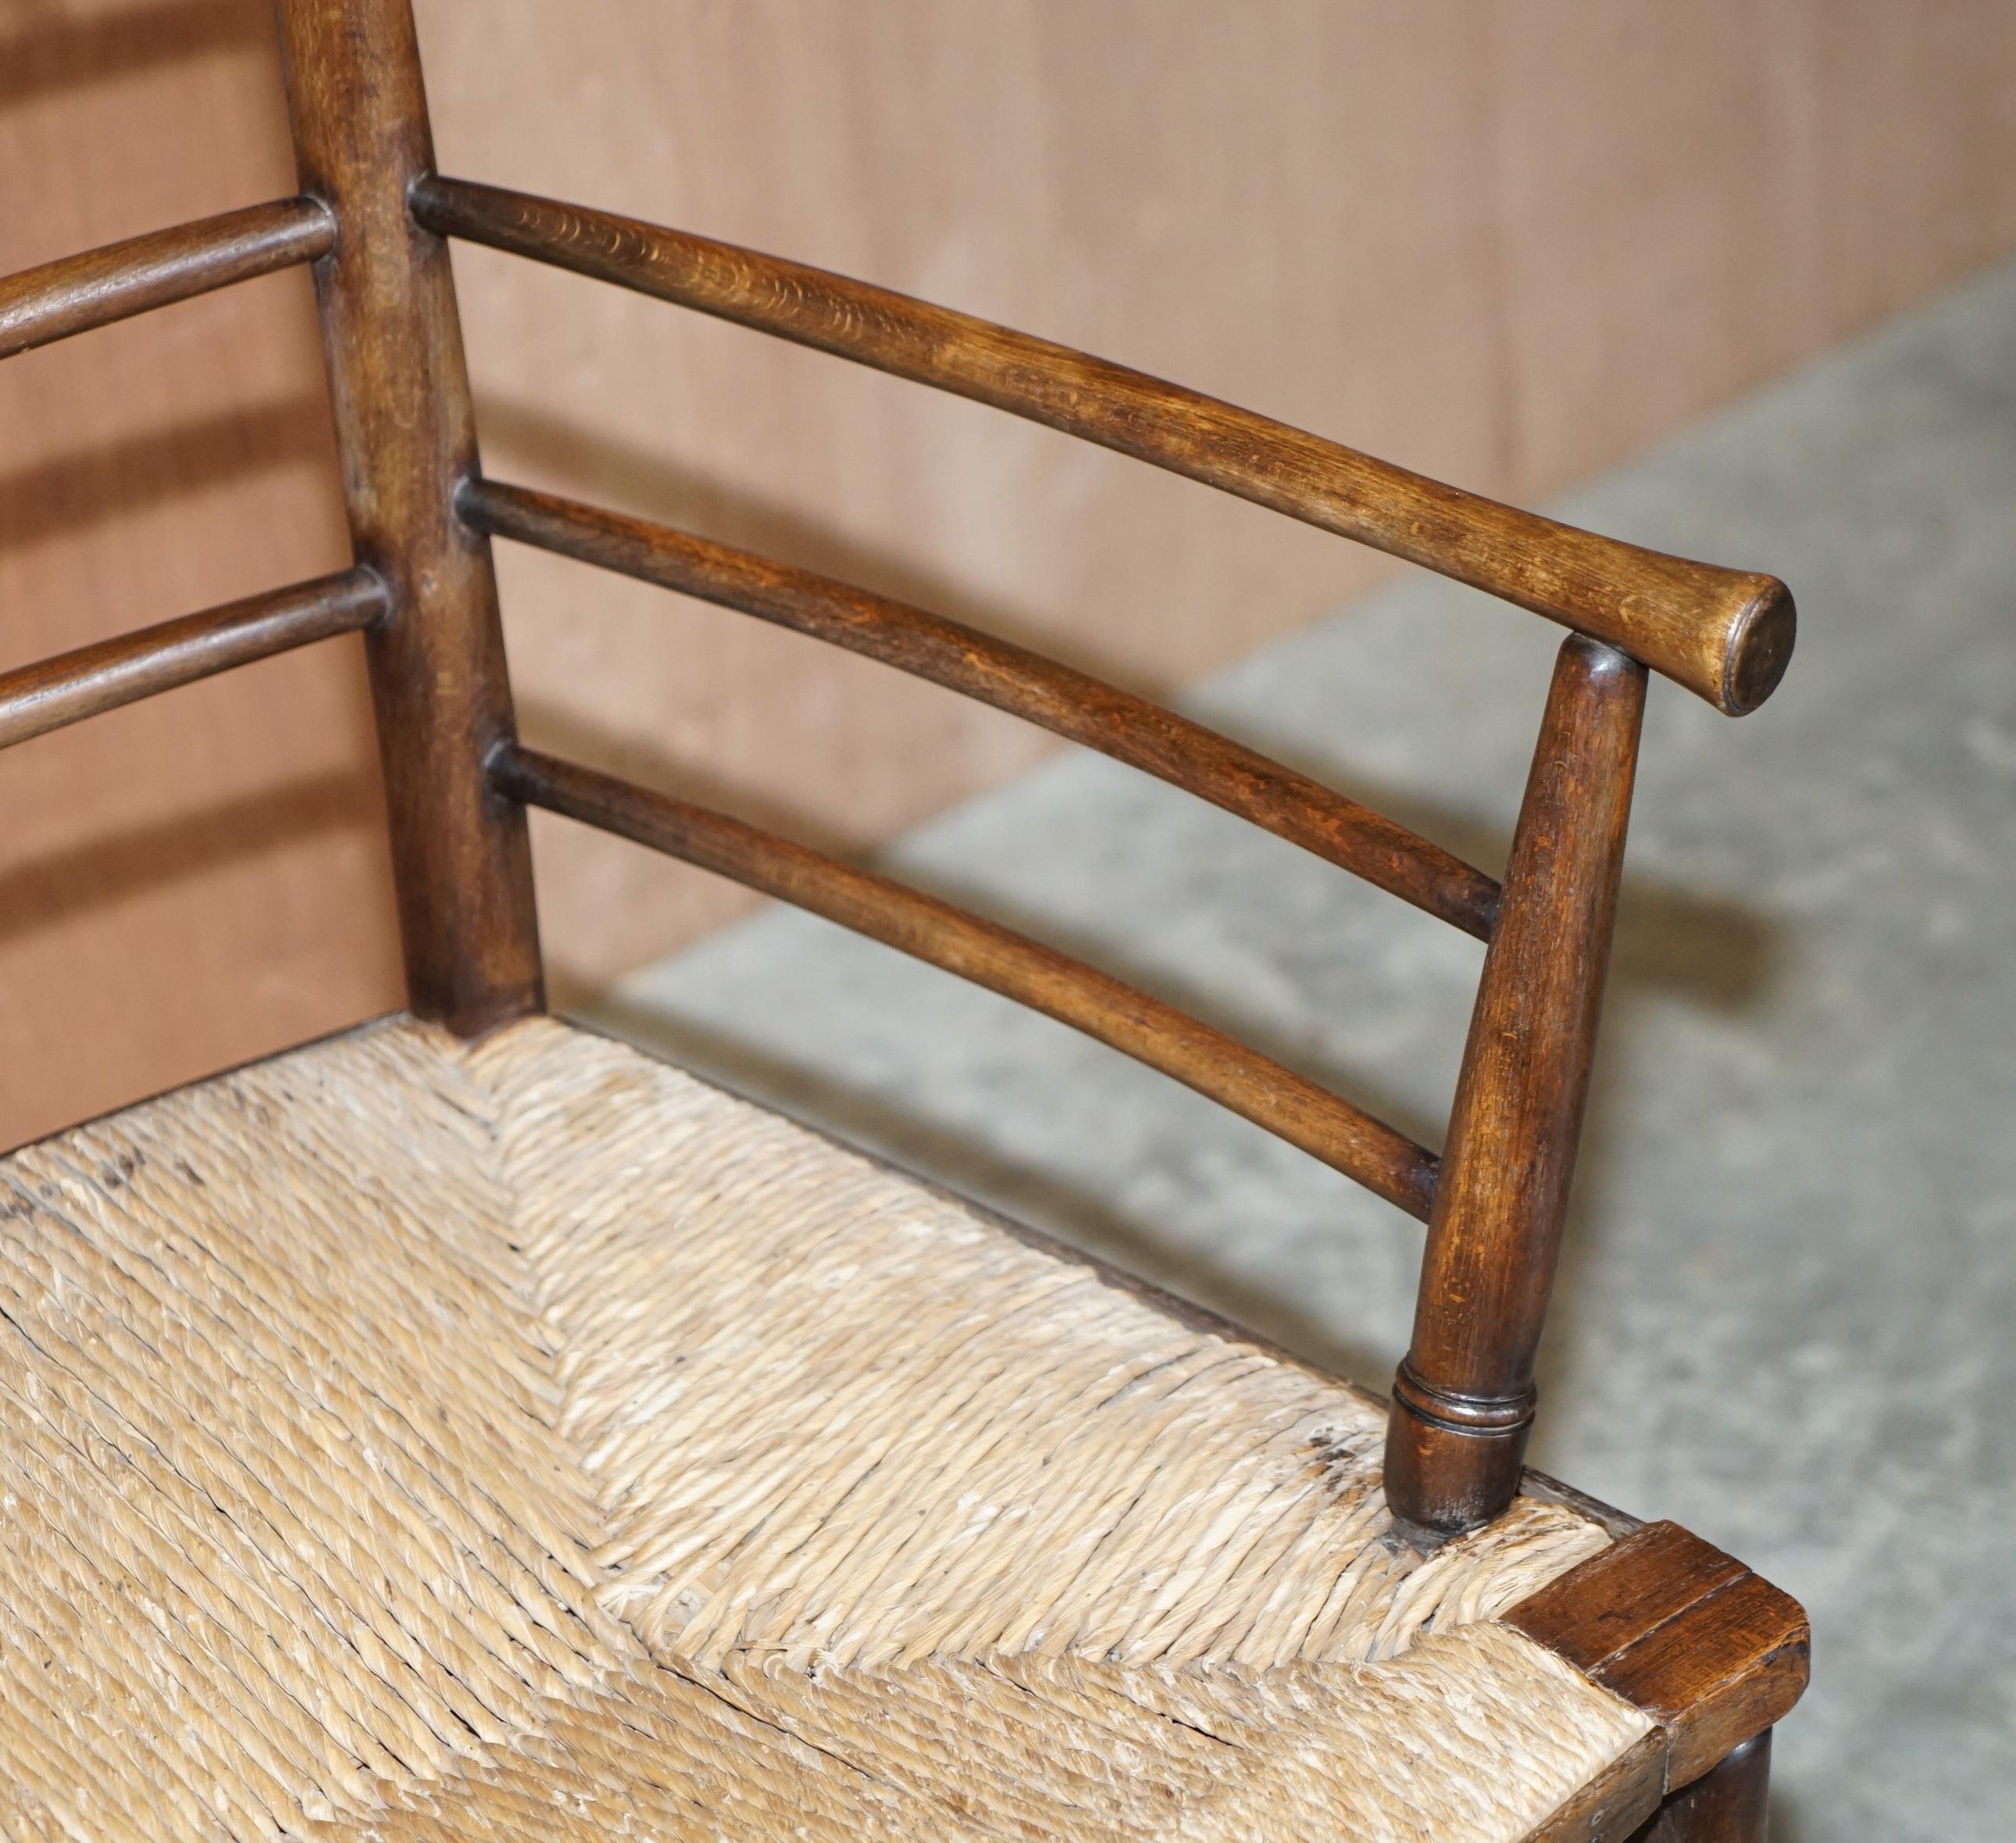 Fin du XIXe siècle Antique Original William Morris Sussex Rush Seat Armchair Vu dans le V&A Museum